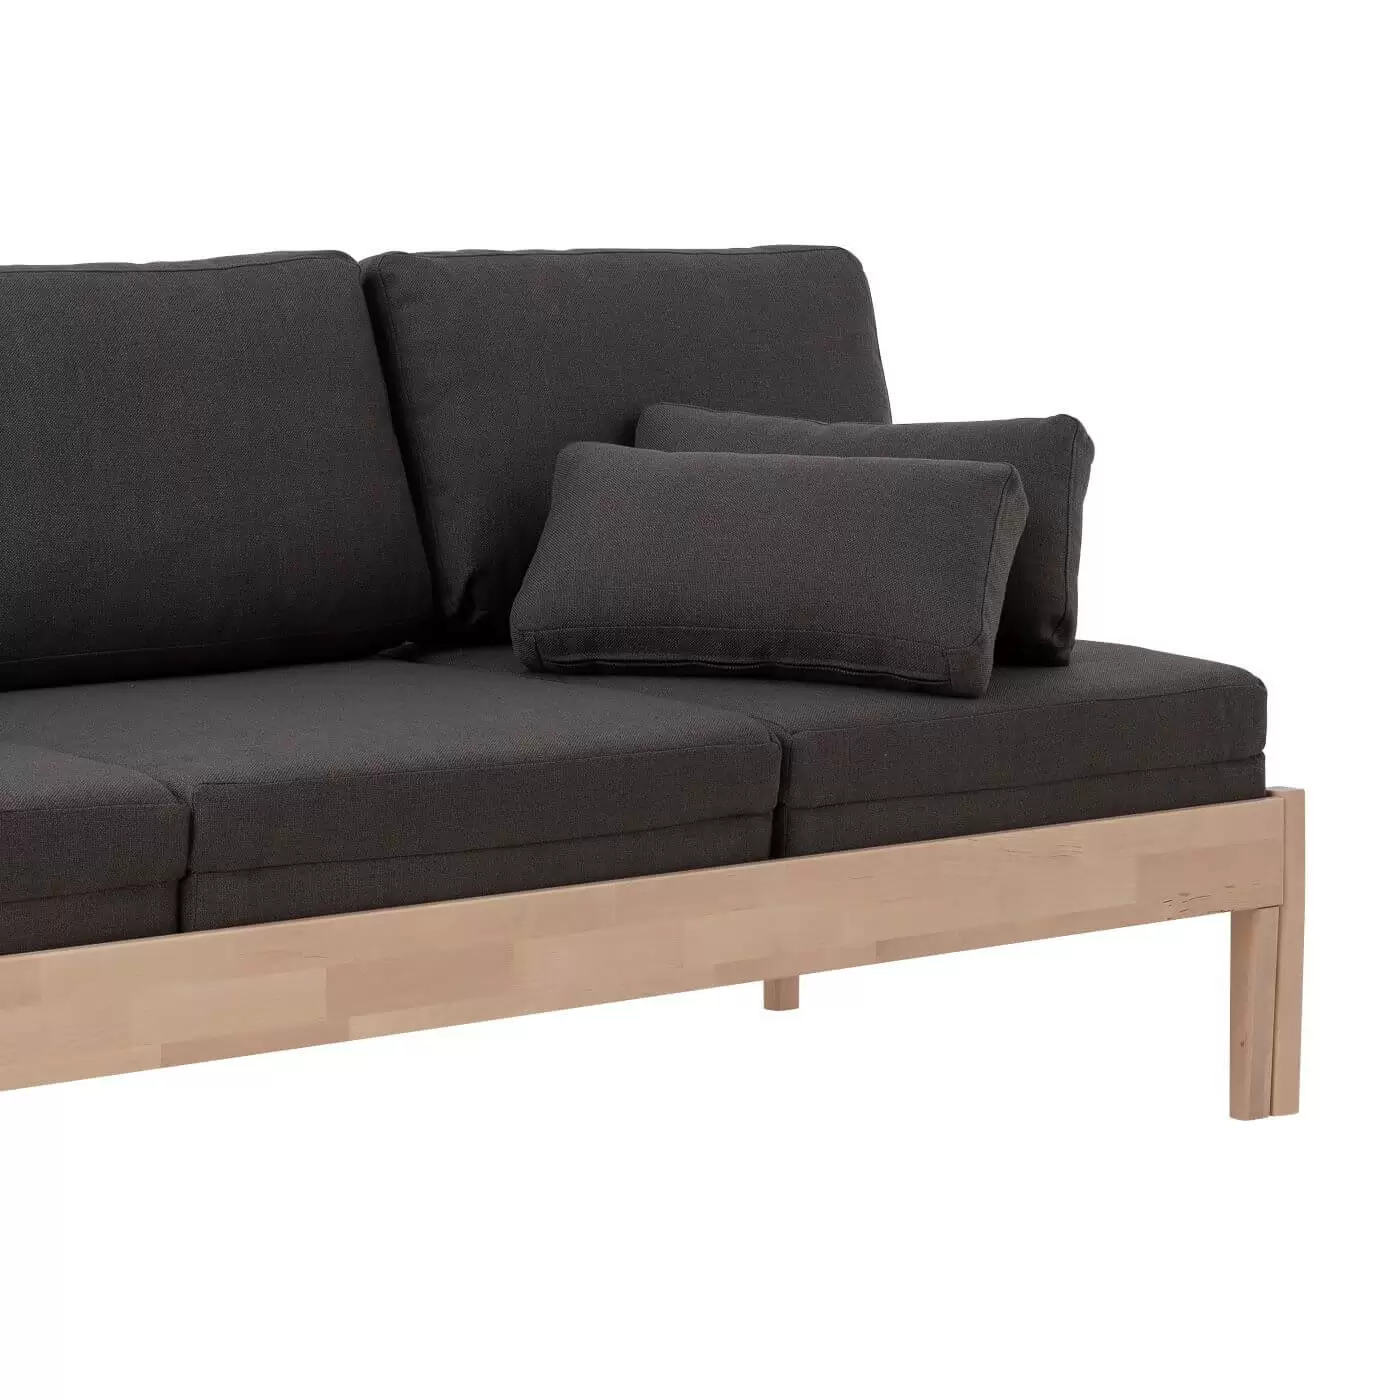 Sofa bez boków NOEL drewniana, na wysokich nogach. Fragment z ciemno szarym materacem i dwoma poduszkami. Skandynawski design